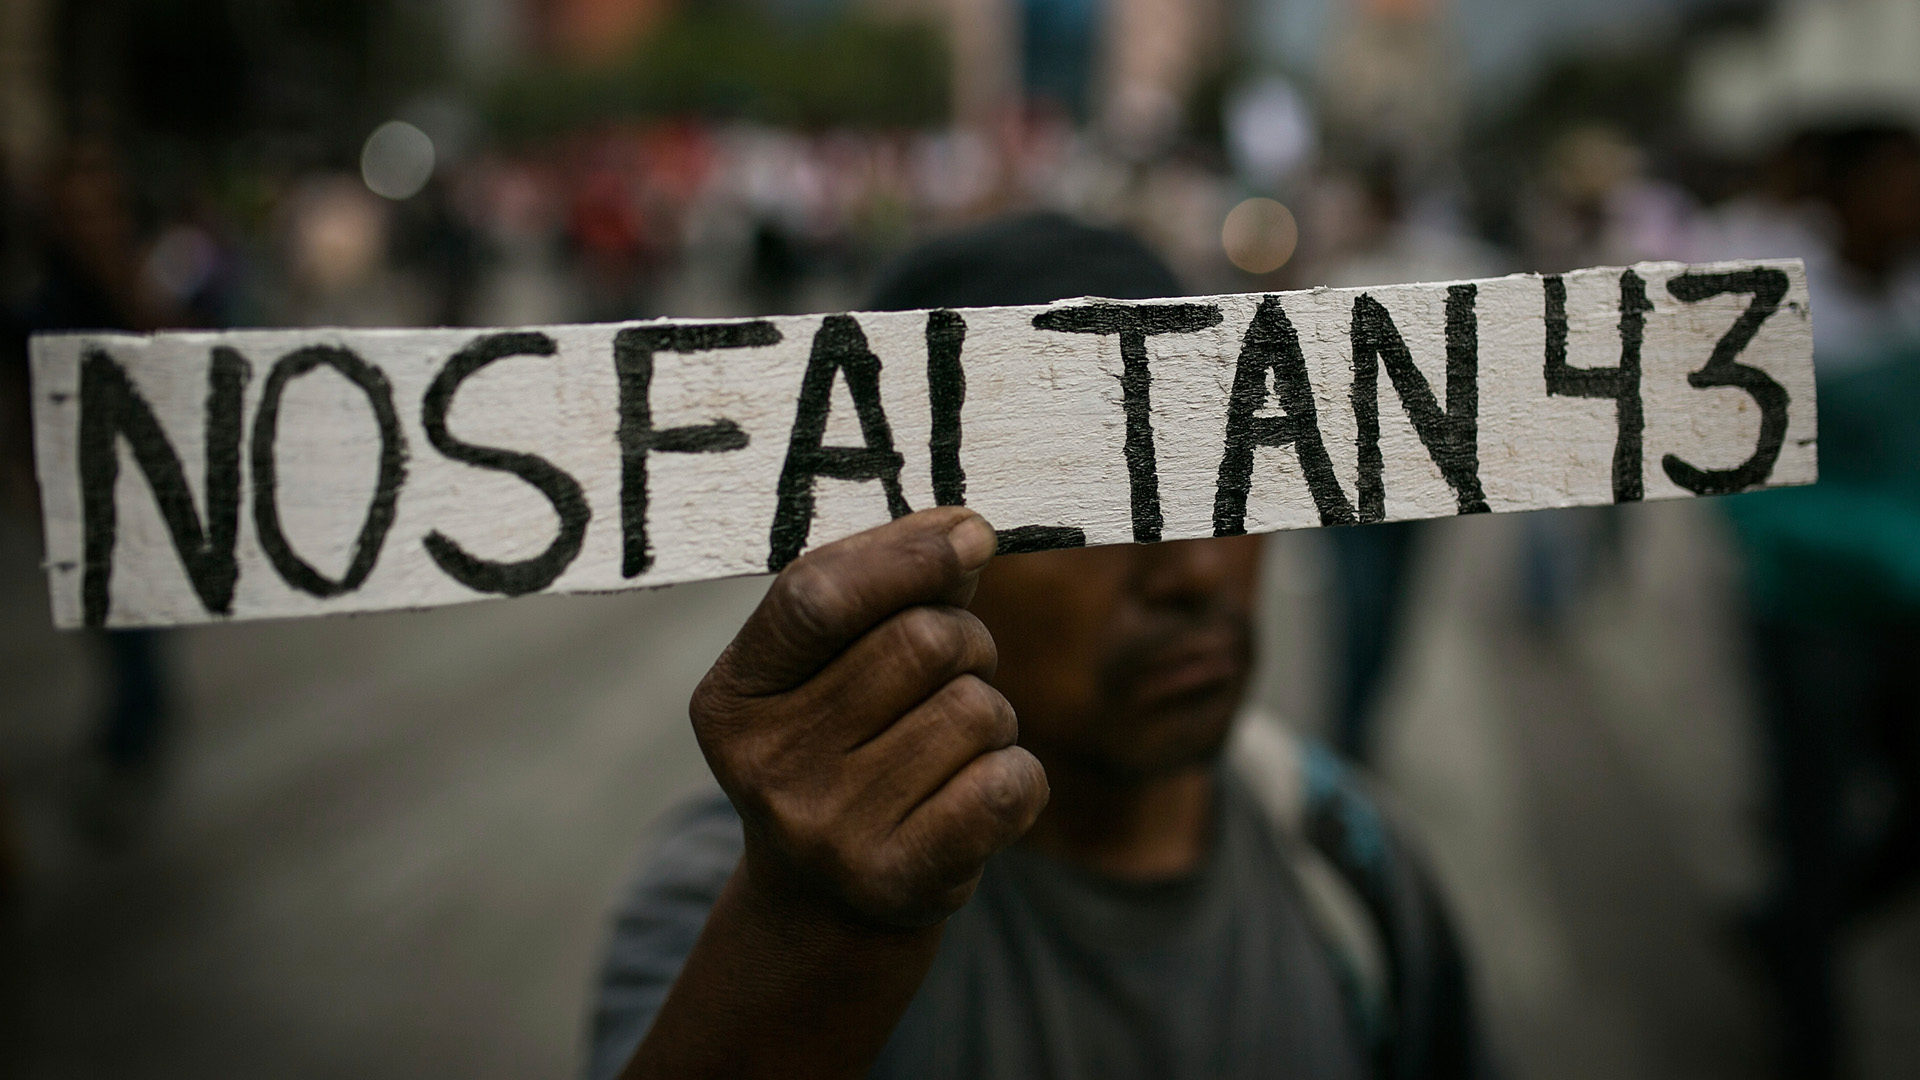  ¿A quién protege el gobierno? Cuestiona ‘The Economist’ sobre Ayotzinapa